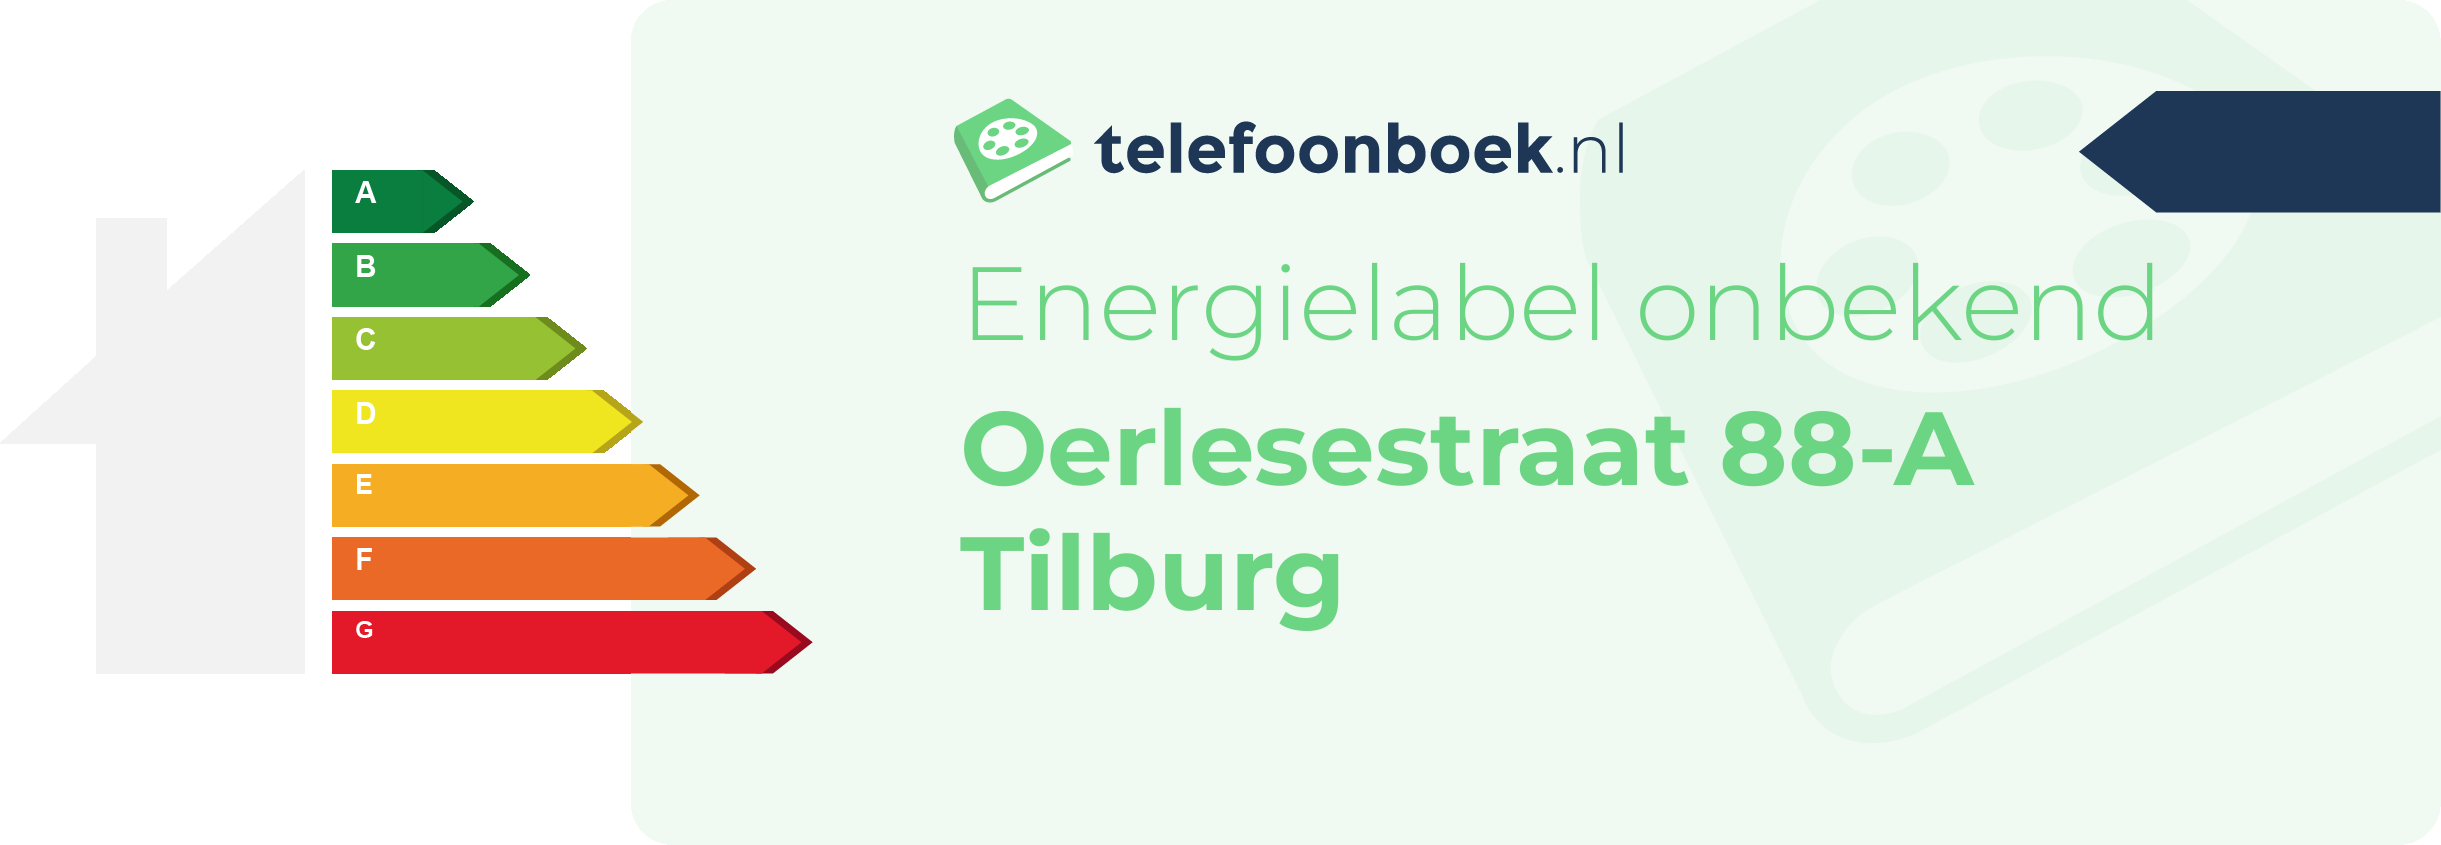 Energielabel Oerlesestraat 88-A Tilburg